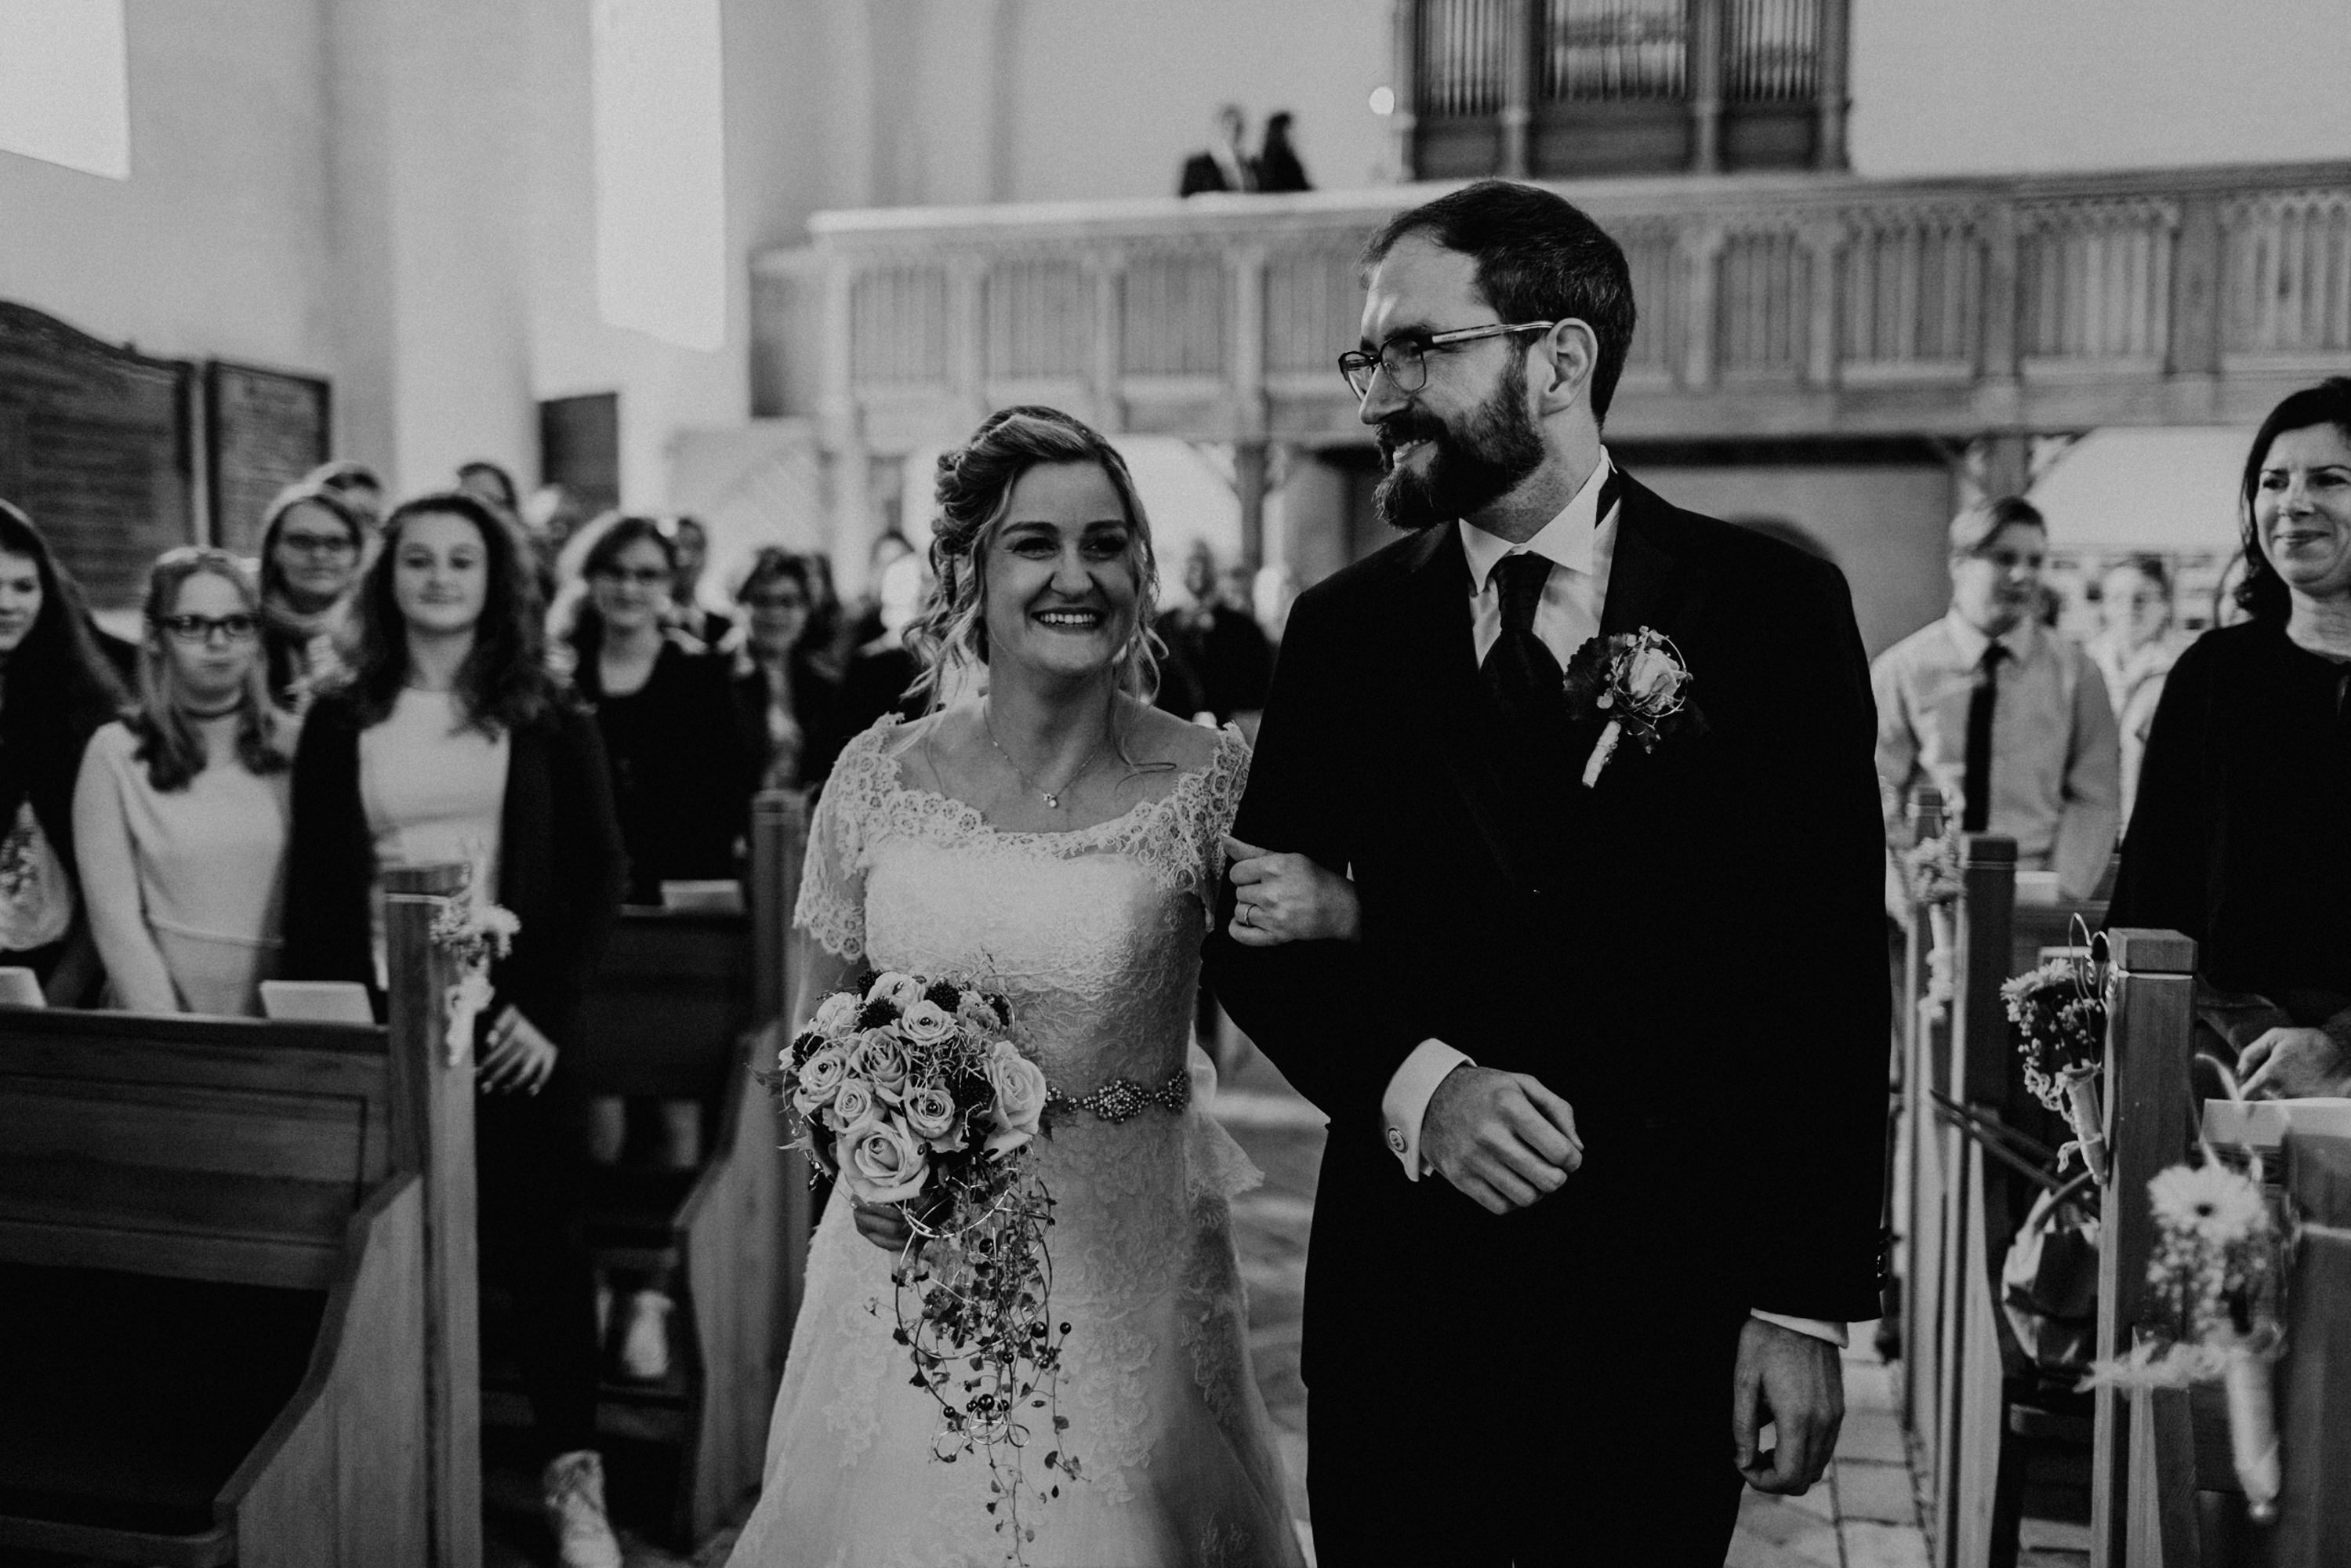 Hochzeitsfoto einer Hochzeitsreportage, fotografiert von Tom und Lia, einem Hochzeitsfotografenpaar aus Rostock. Die Hochzeit fand auf Schloss Hasenwinkell (Mecklenburg-Vorpommern, Ostsee) im Oktober 2017 statt.